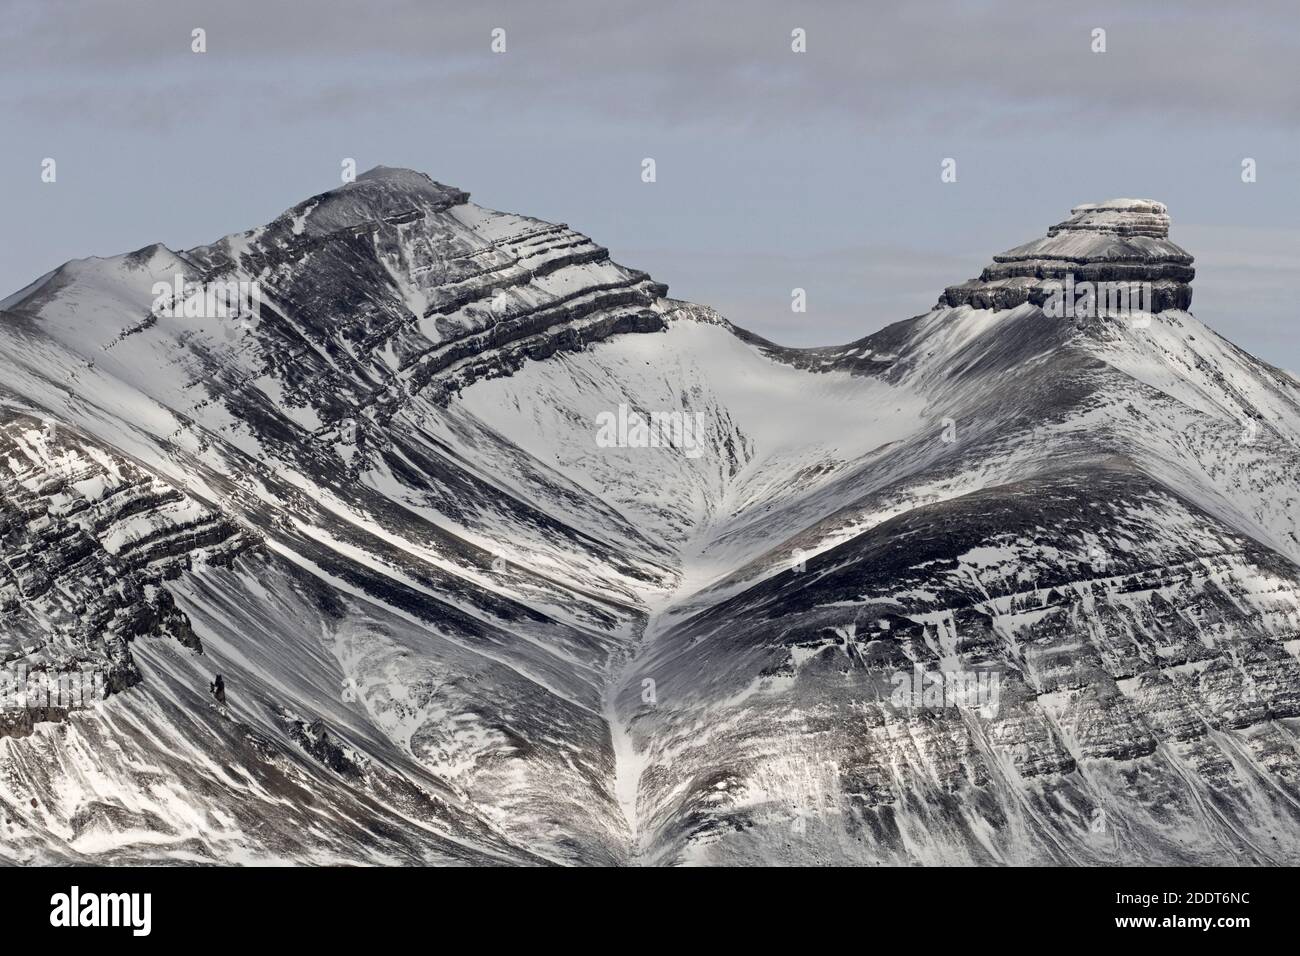 Neige couverte versant de montagne carbonifère montrant des strates en automne, Billefjord / Billefjorden, Svalbard / Spitsbergen, Norvège Banque D'Images